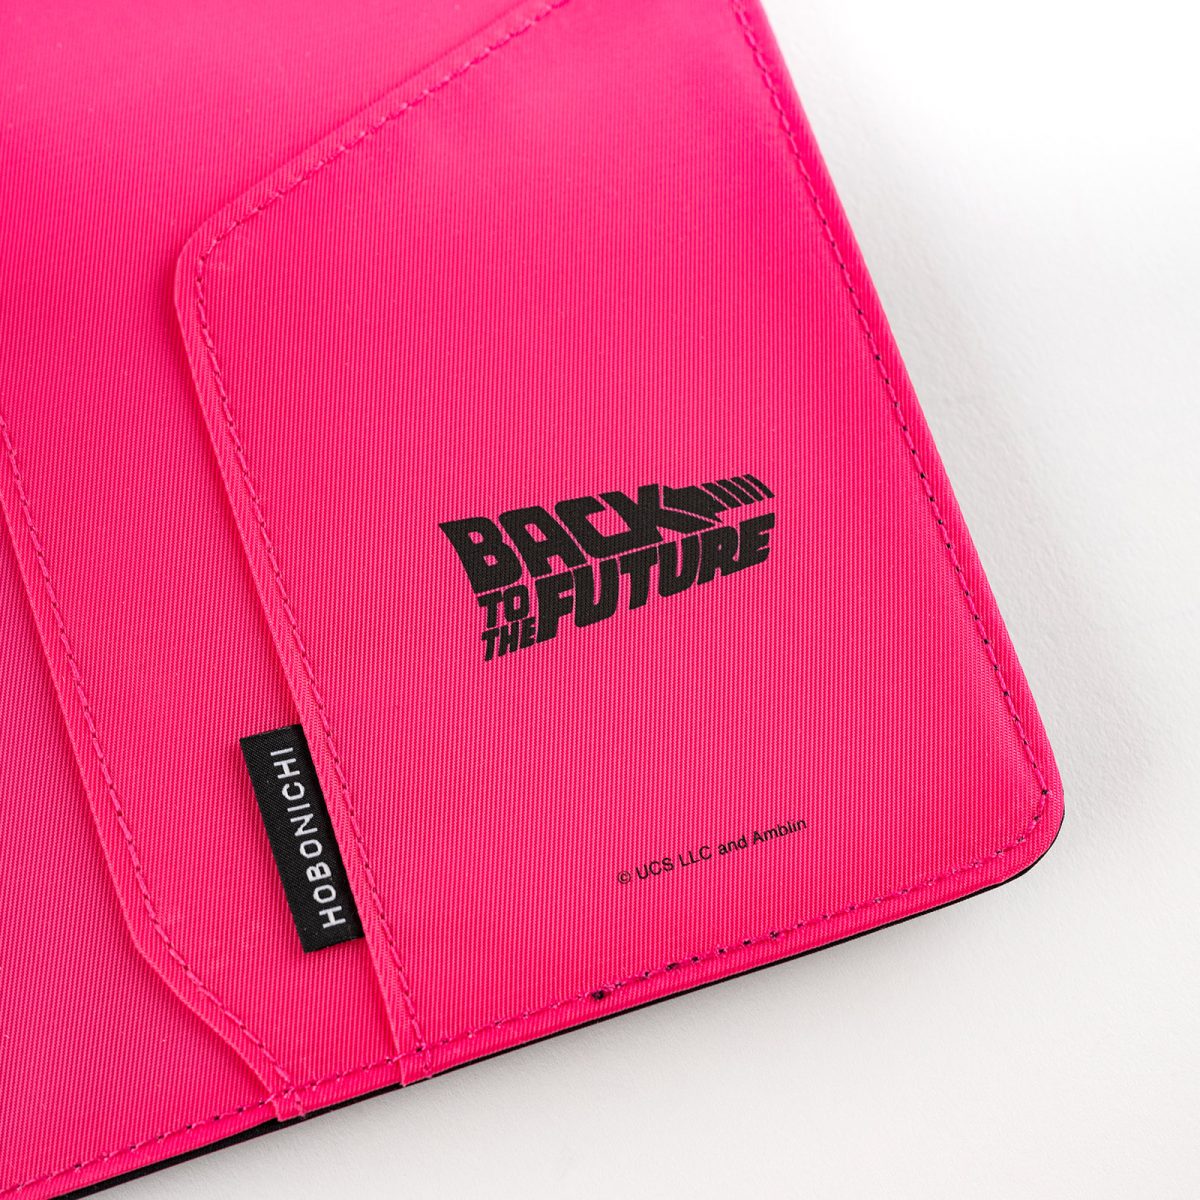  内側はビビッドなピンク色で、右側のポケットには「Back to the Future」のロゴをプリント